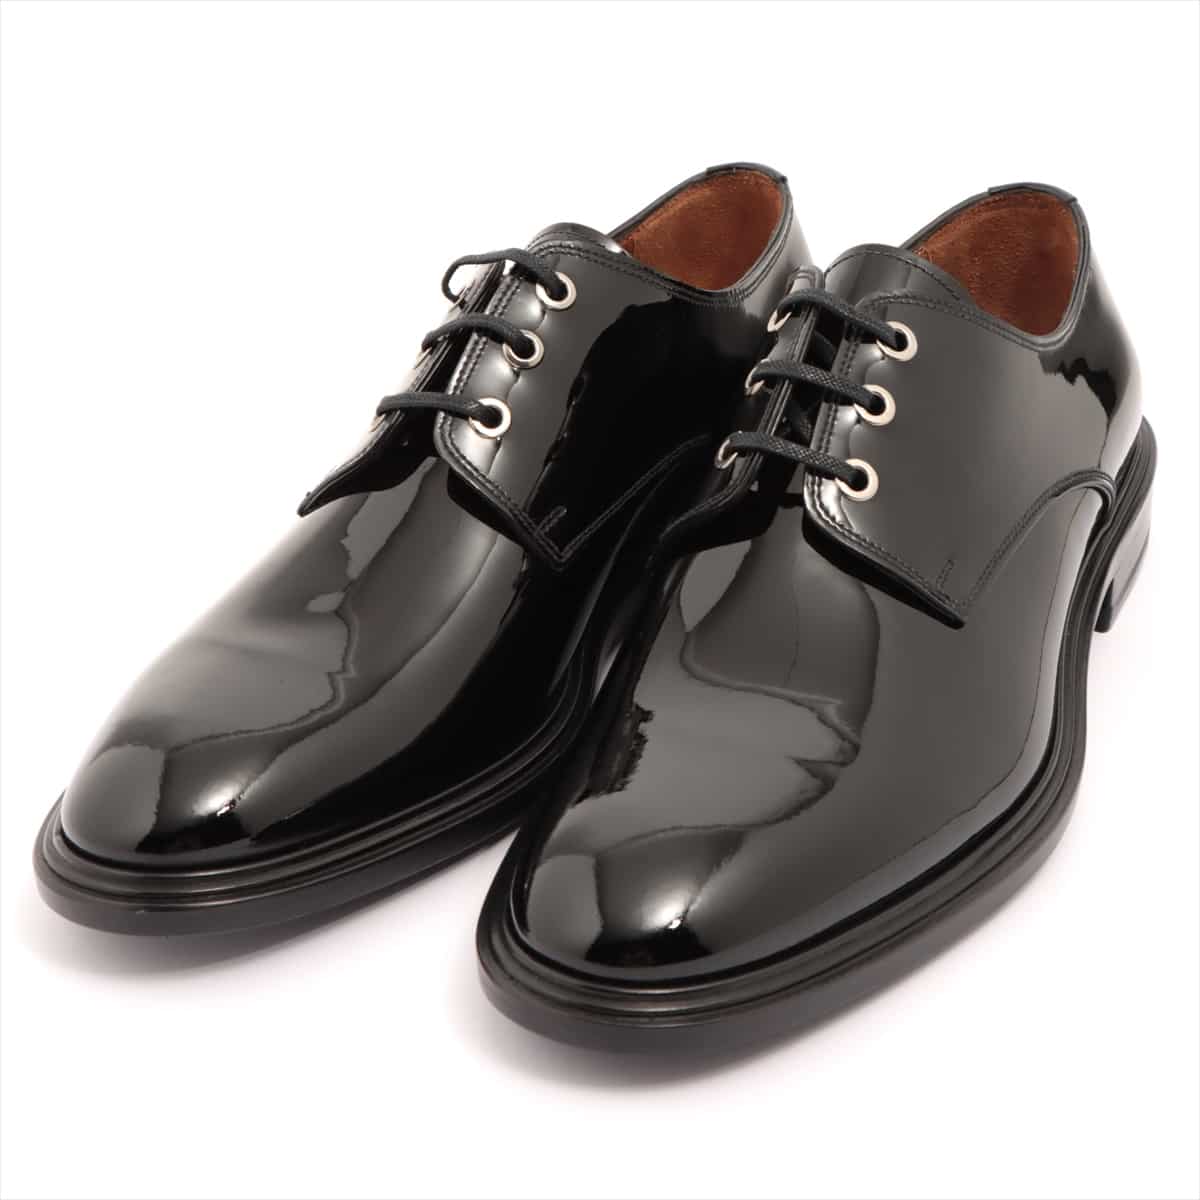 Givenchy Patent leather Dress shoes 41 1/2 Men's Black BM8050